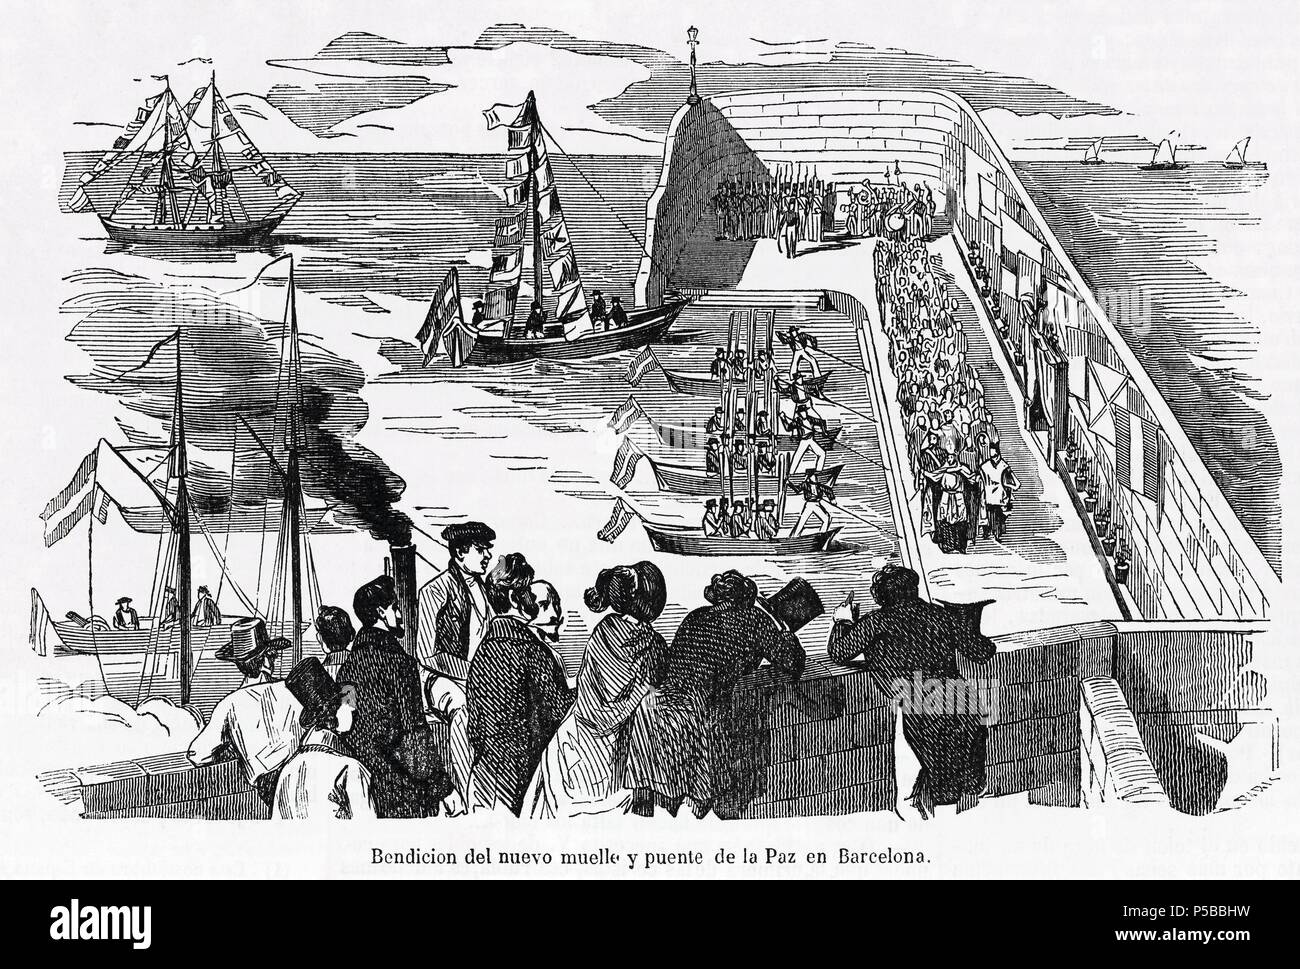 Bendición del nuevo muelle y puente de la Paz en Barcelona en noviembre de 1850. Grabado de la época. Stock Photo